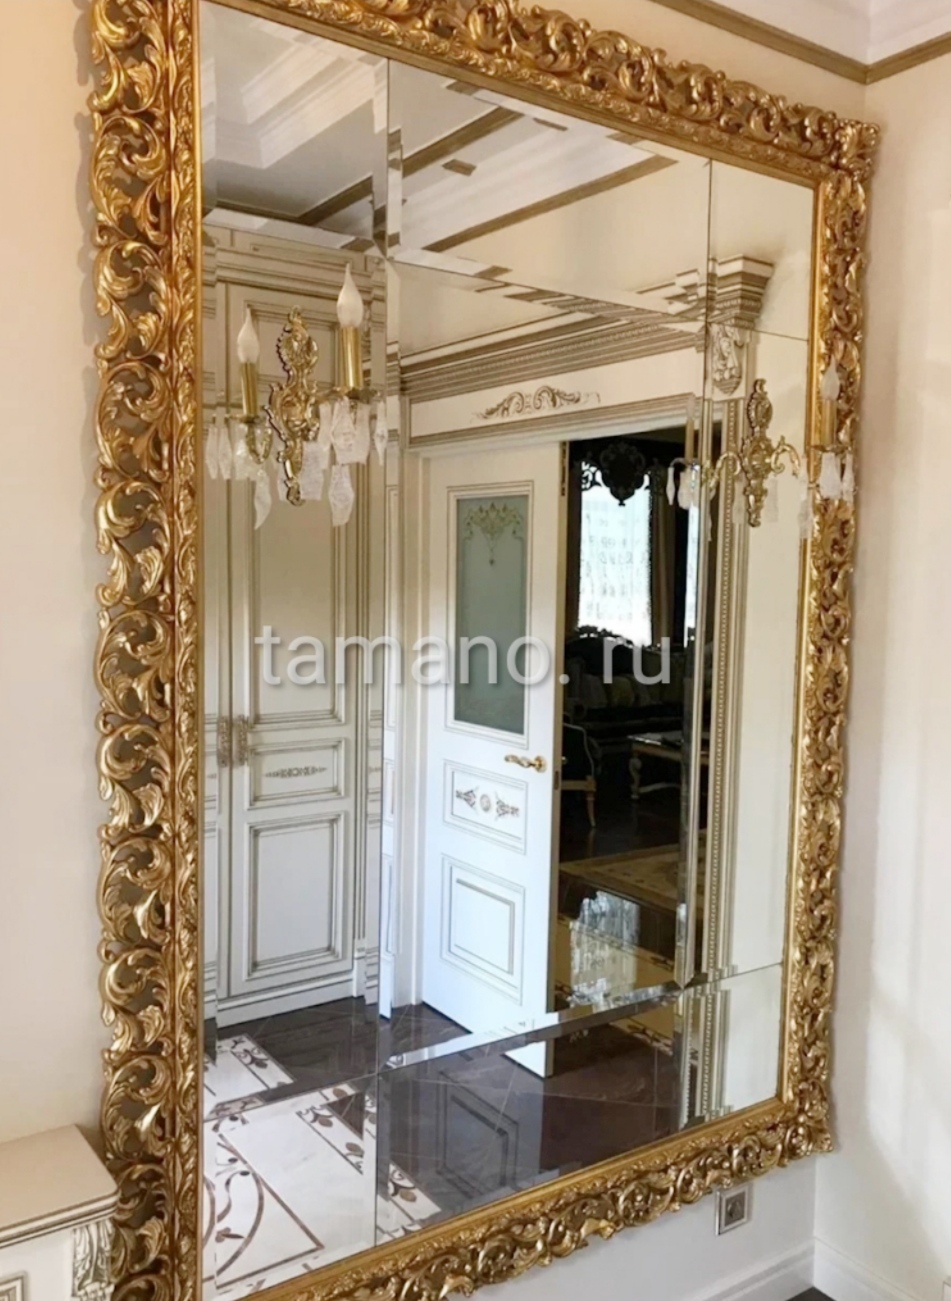 Очень красивое зеркальное панно в золотом резном багете.jpg